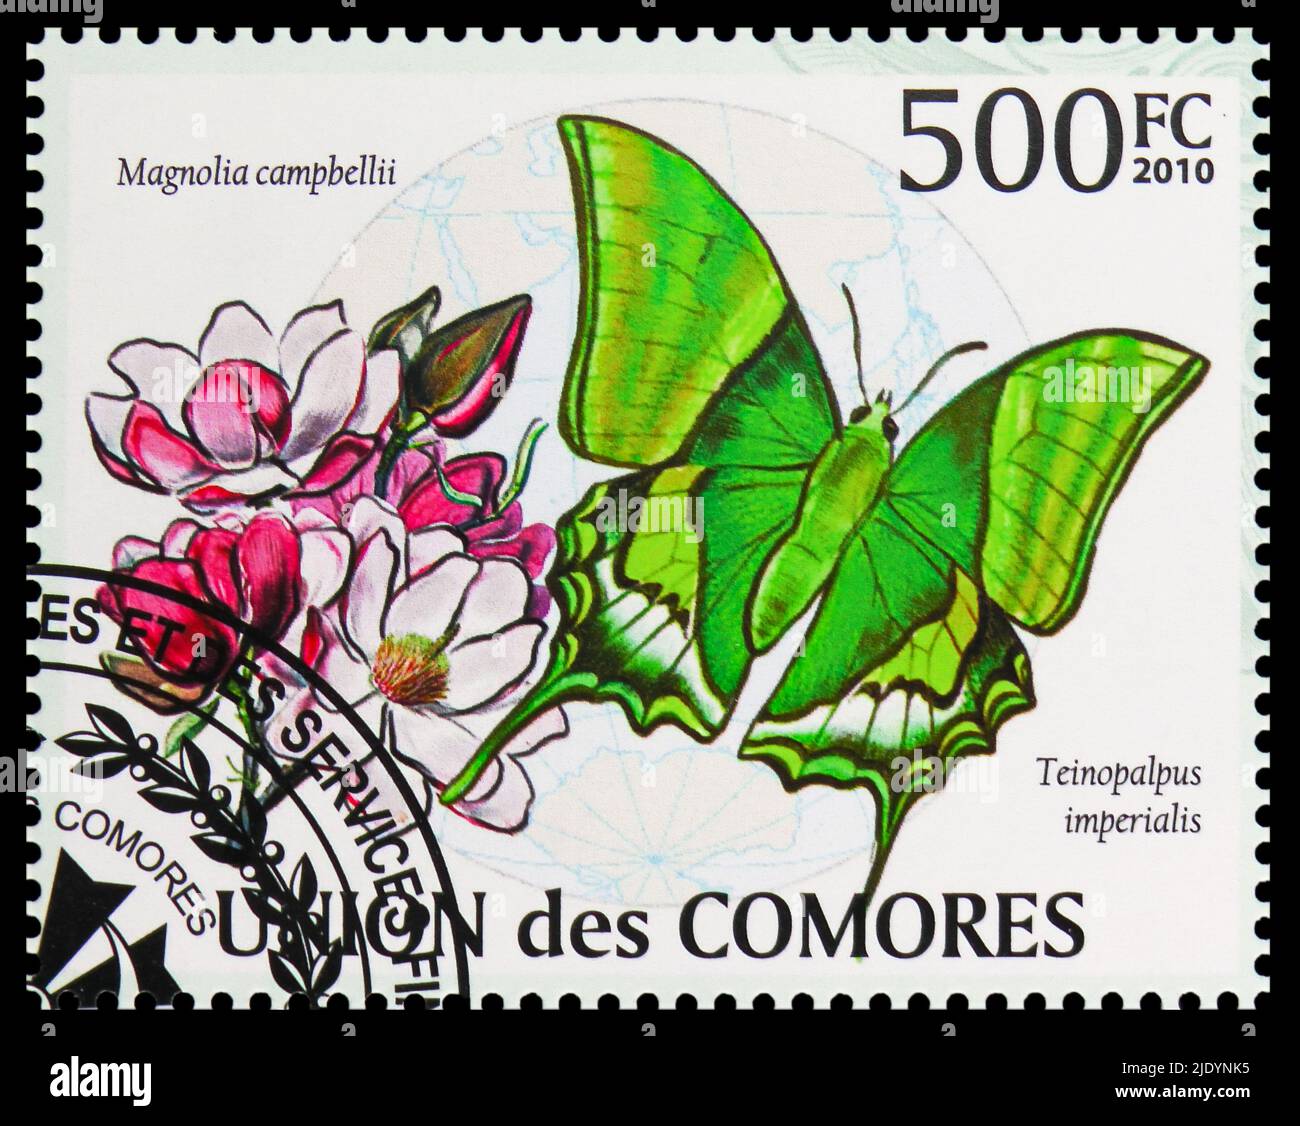 MOSCOU, RUSSIE - 17 JUIN 2022 : le timbre-poste imprimé aux Comores montre Kaiser-i-Hind (Teinopalpus imperalis), papillons de la région de l'océan Indien Banque D'Images